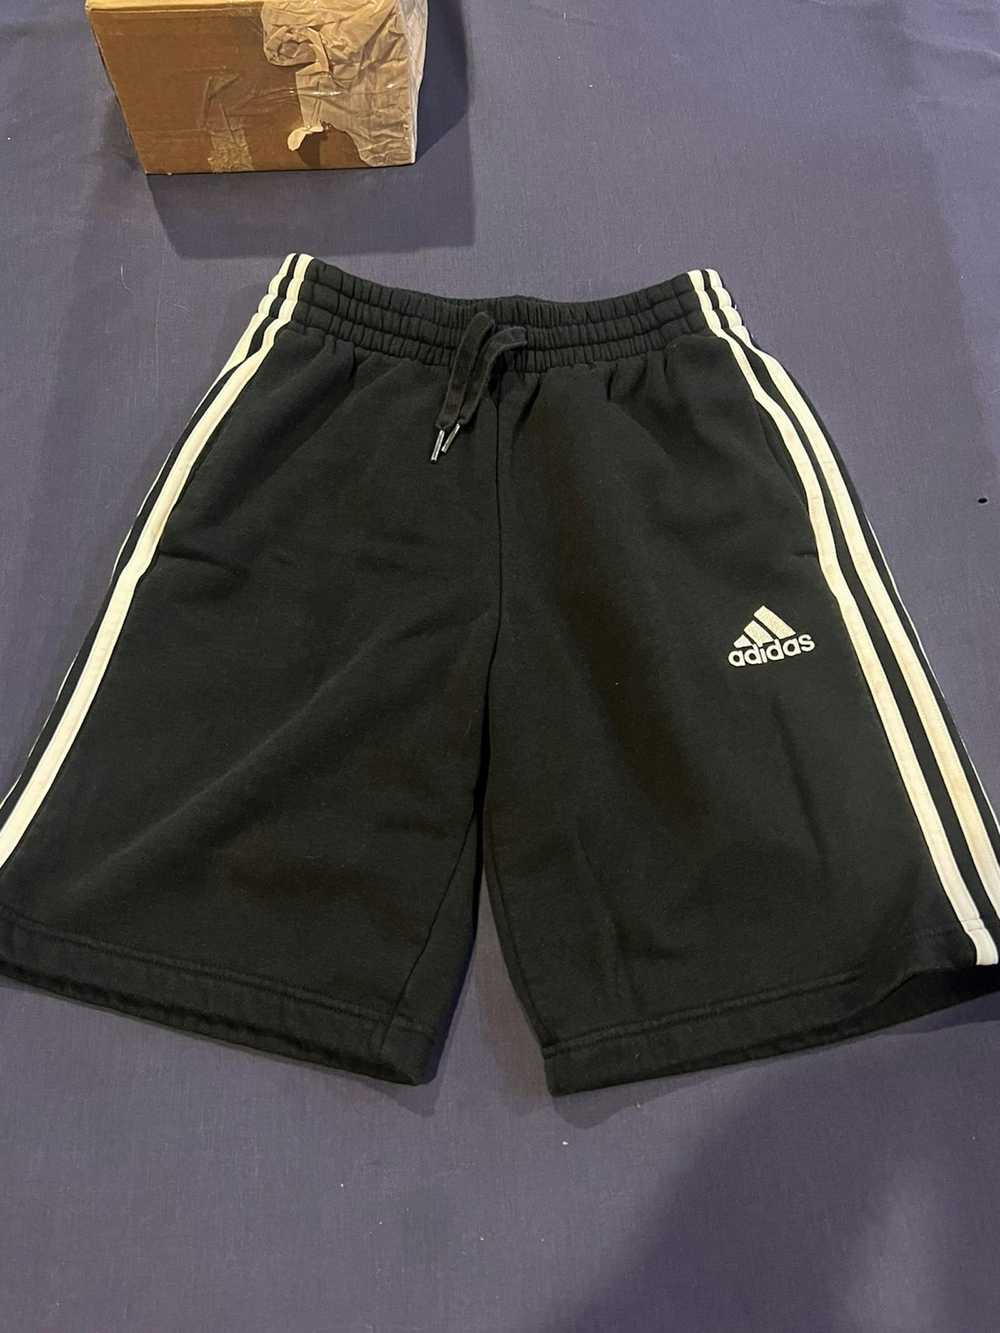 Adidas Adidas jogger shorts - image 2